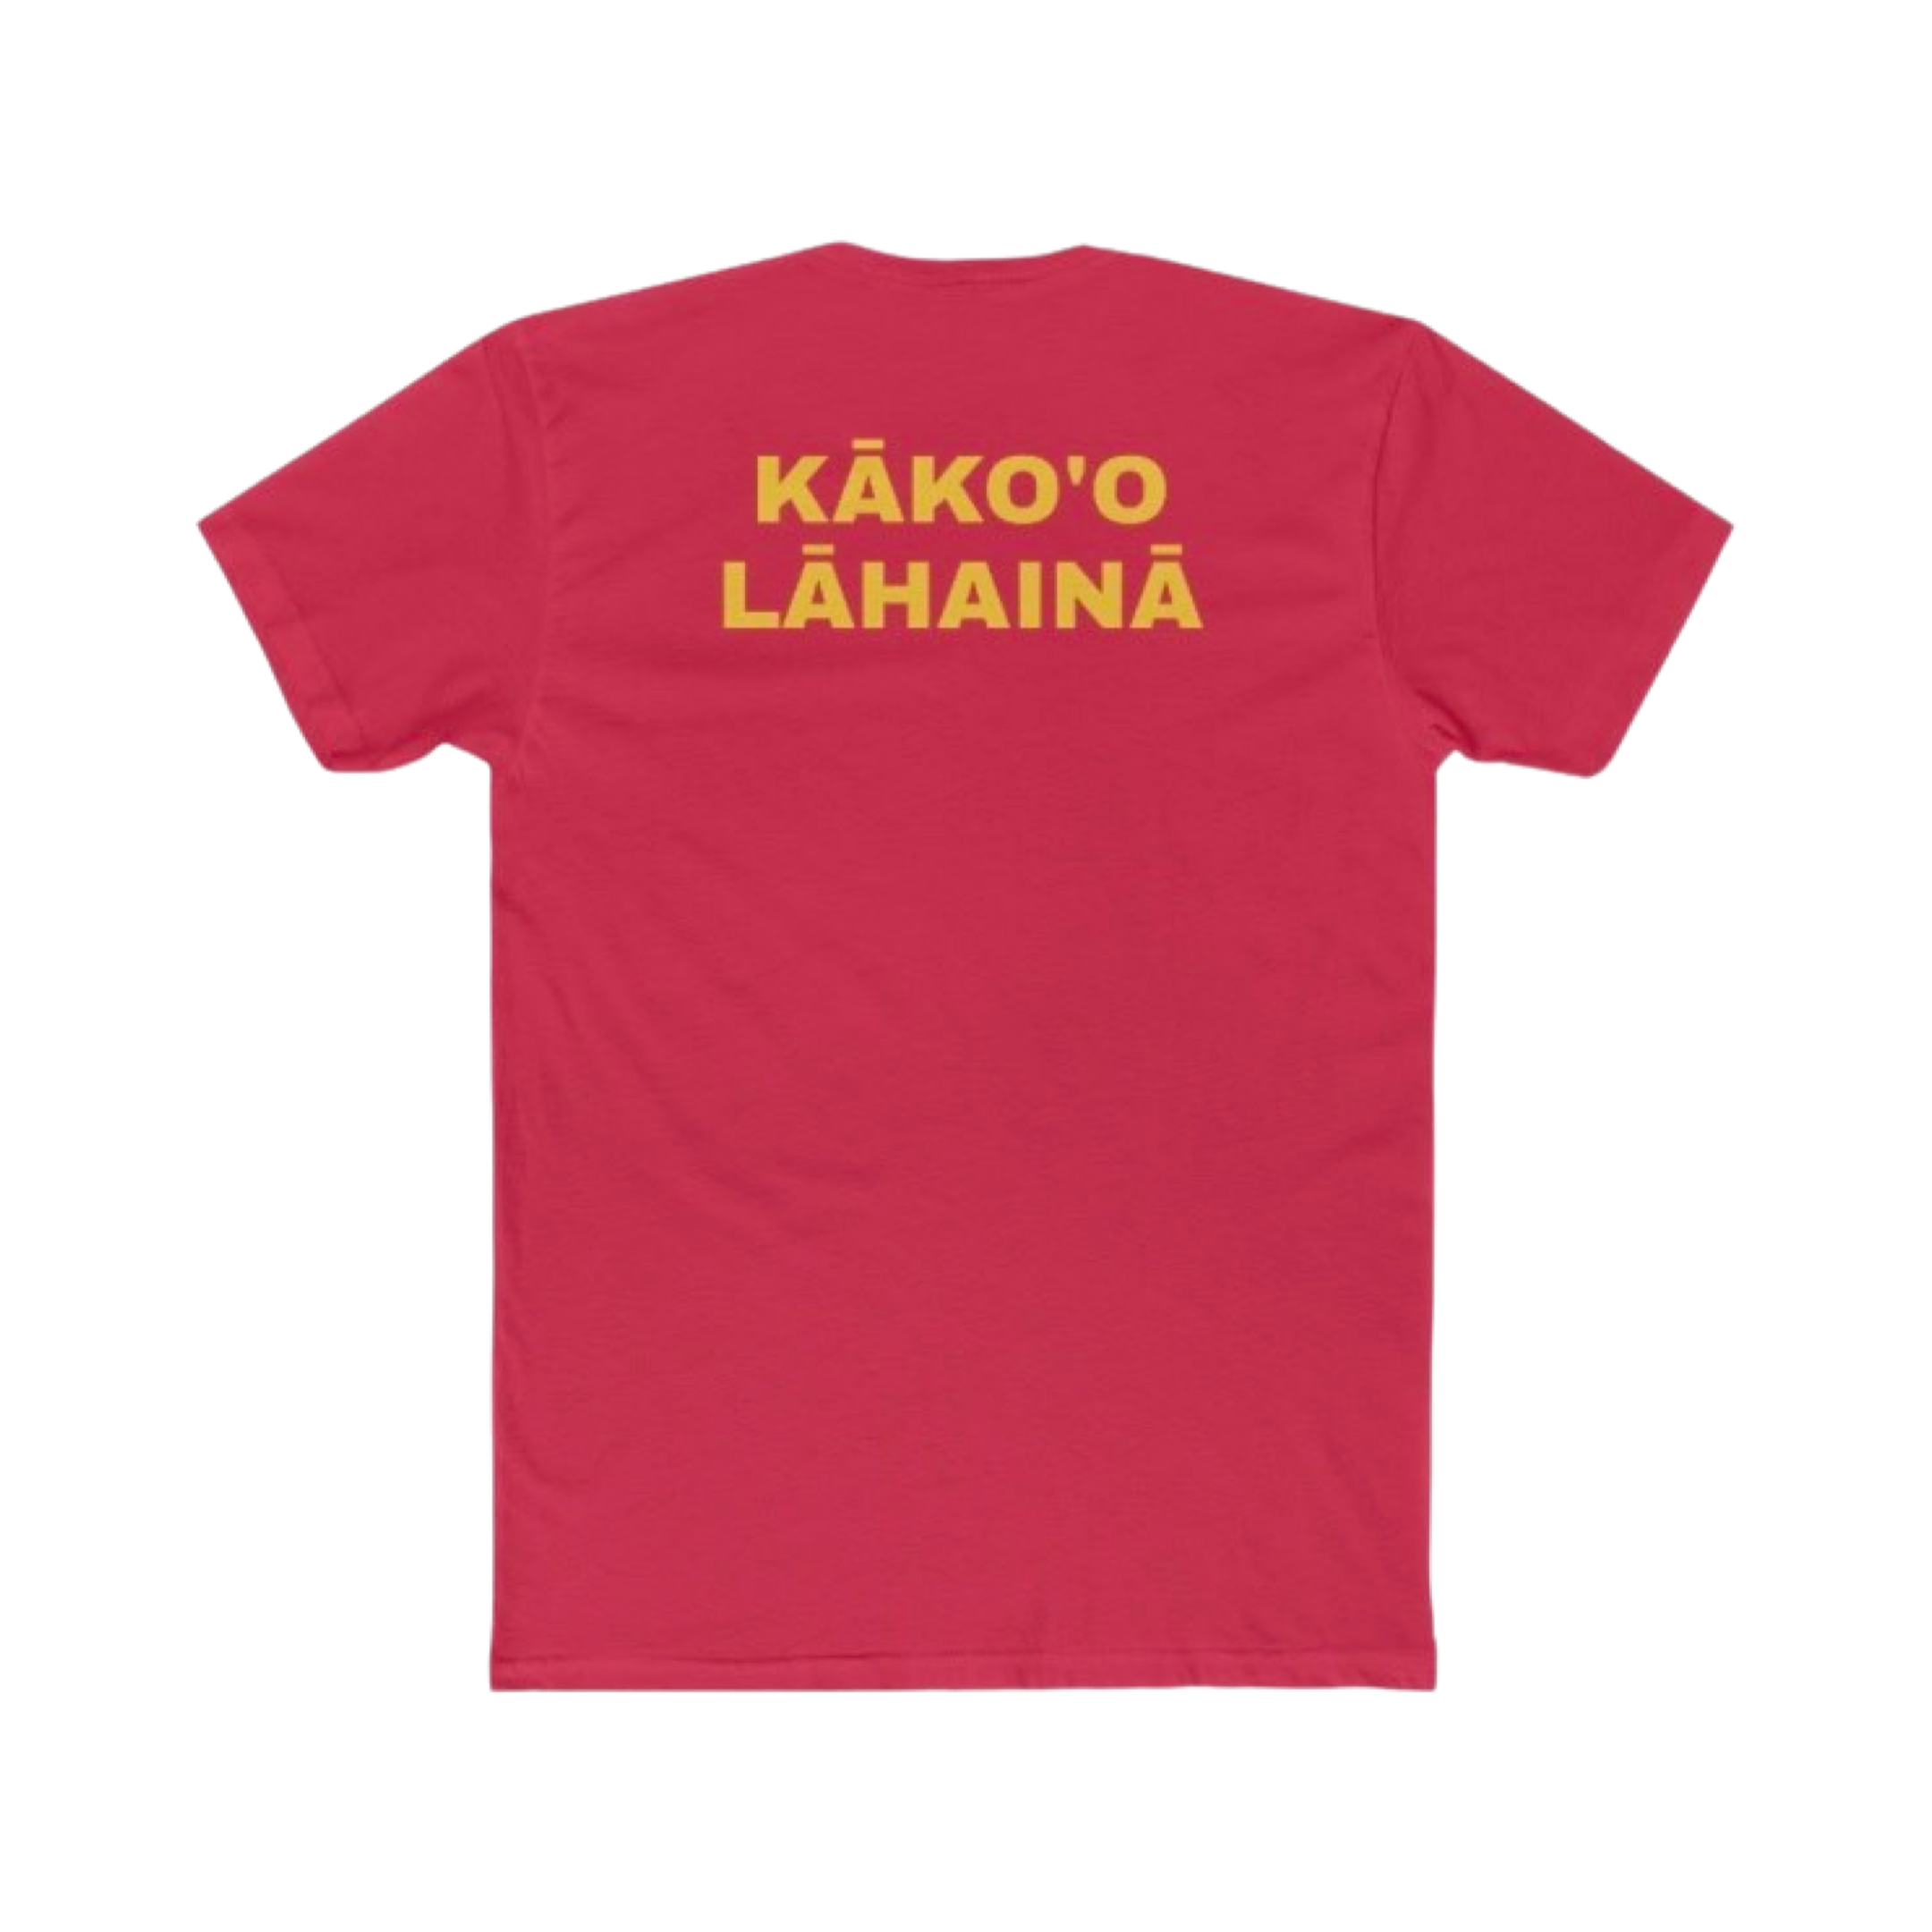 LĀHAINĀ RŌŌTZ - Banyan Tree - Men's T-Shirt - Lāhainā Fundraiser